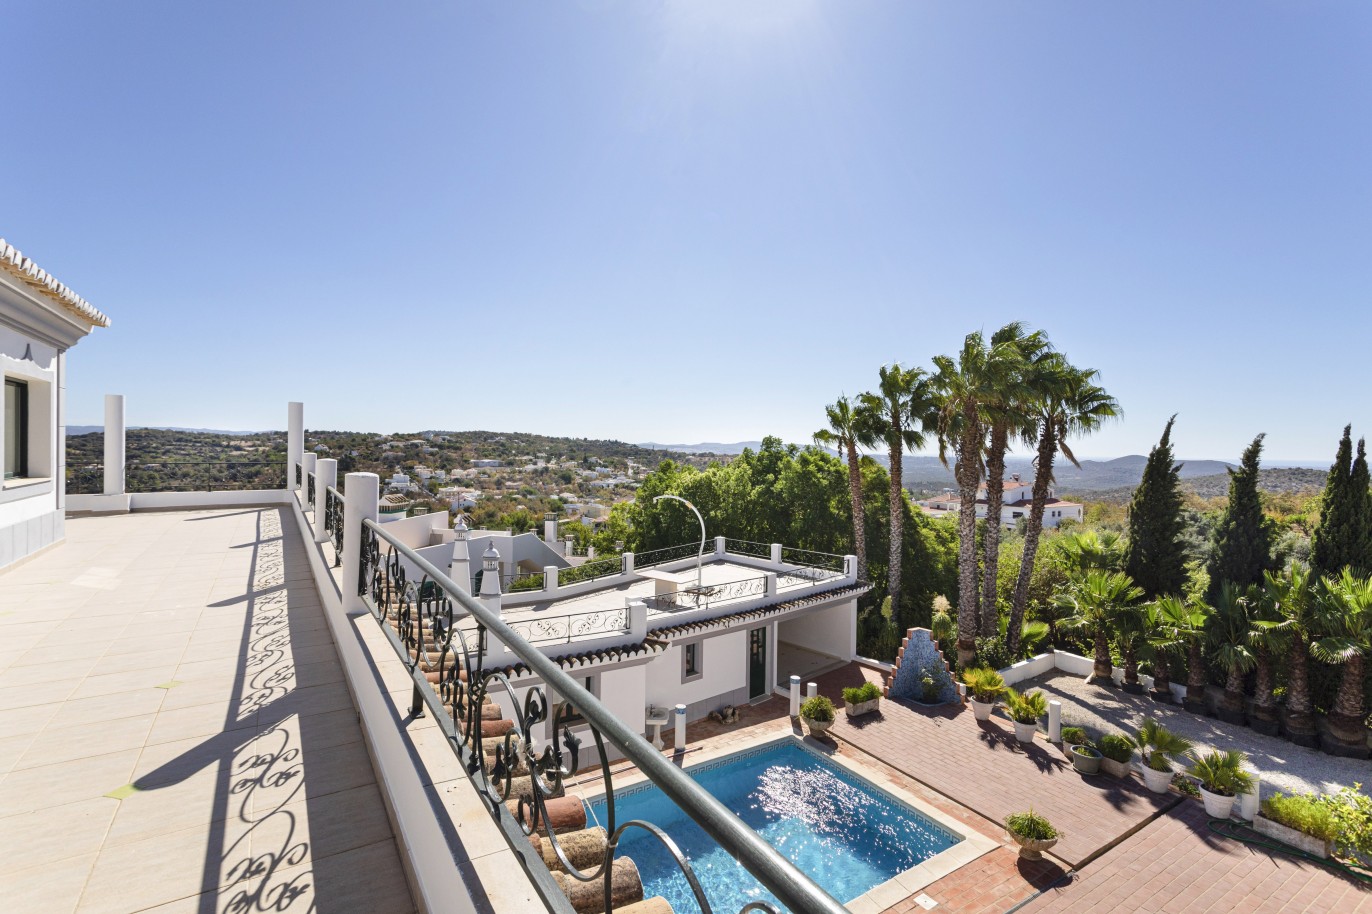 Piso en venta, piscina, vista mar y montaña, Loulé, Algarve, Portugal_236422